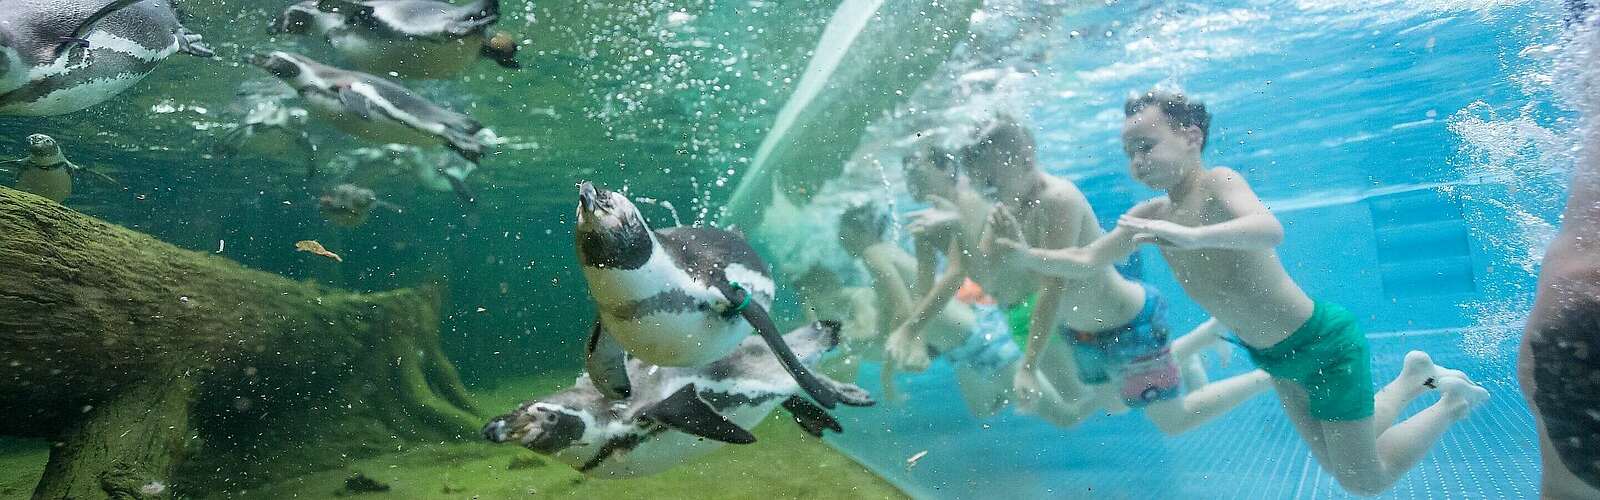 Schwimmen mit Pinguinen,
        
    

        Foto: Spreewelten GmbH/Kein Urheber bekannt